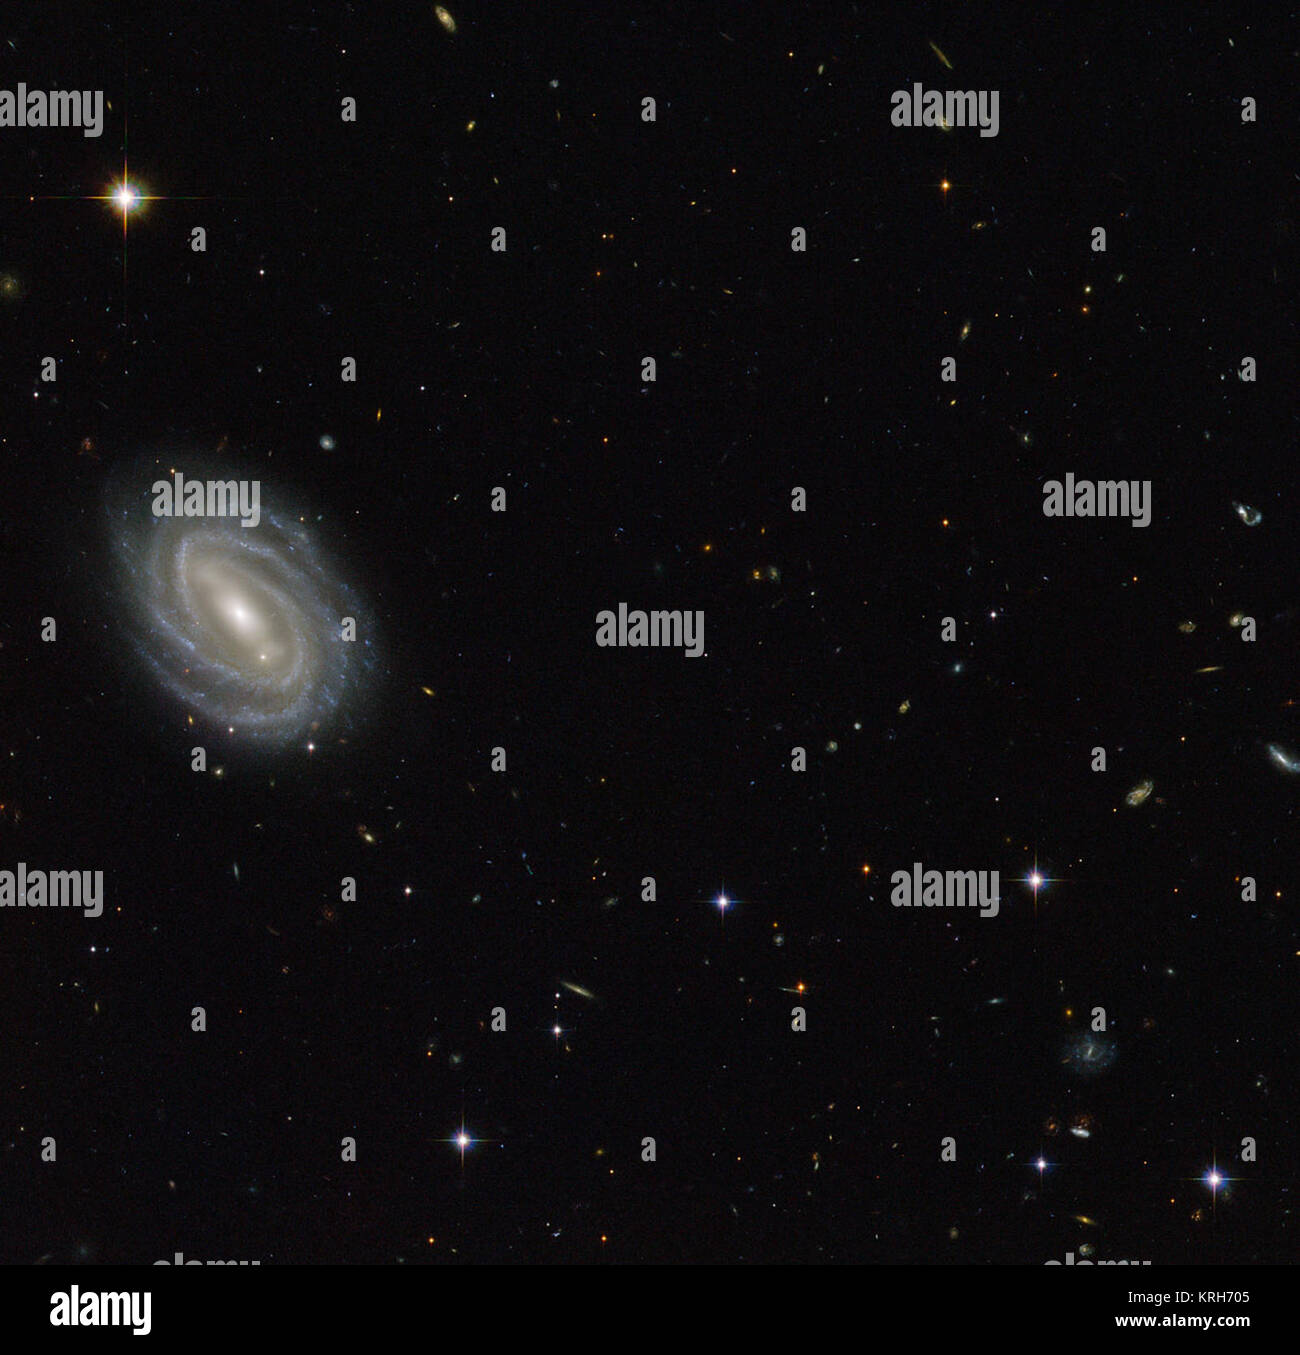 Diese neue NASA/ESA Hubble Space Telescope Bild zeigt eine schöne Spiralgalaxie bekannt als PGC 54493, entfernt im Sternbild Serpens (Die Schlange). Diese Galaxie ist Teil eines Galaxienhaufens, die von den Astronomen entdecken eine faszinierende Phänomen, wie die Schwachen Gravitationslinseneffekts untersucht wurde. Dieser Effekt, verursacht durch die ungleiche Verteilung der Materie (einschließlich dunkle Materie) im gesamten Universum, über Umfragen, wie z. B. das Hubble Medium Deep Survey untersucht wurde. Die dunkle Materie ist eines der großen Rätsel der Kosmologie. Es verhält sich ganz anders als gewöhnliche Materie, da er keine em Stockfoto